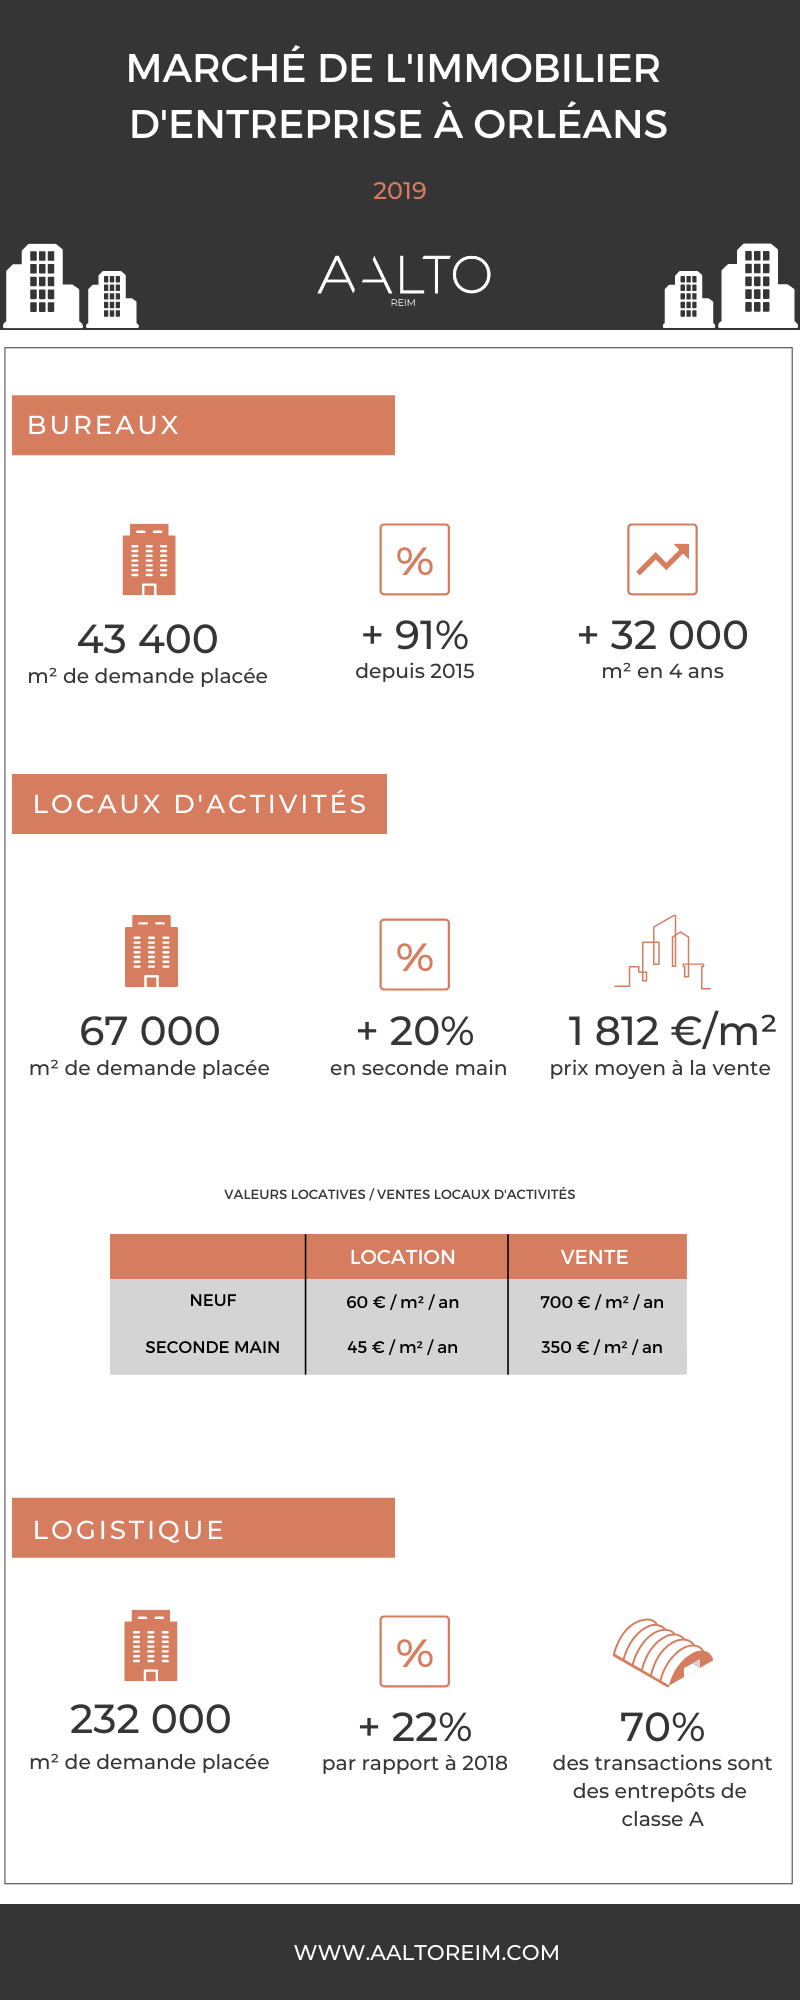 Marché Immobilier D'entreprise Orléans